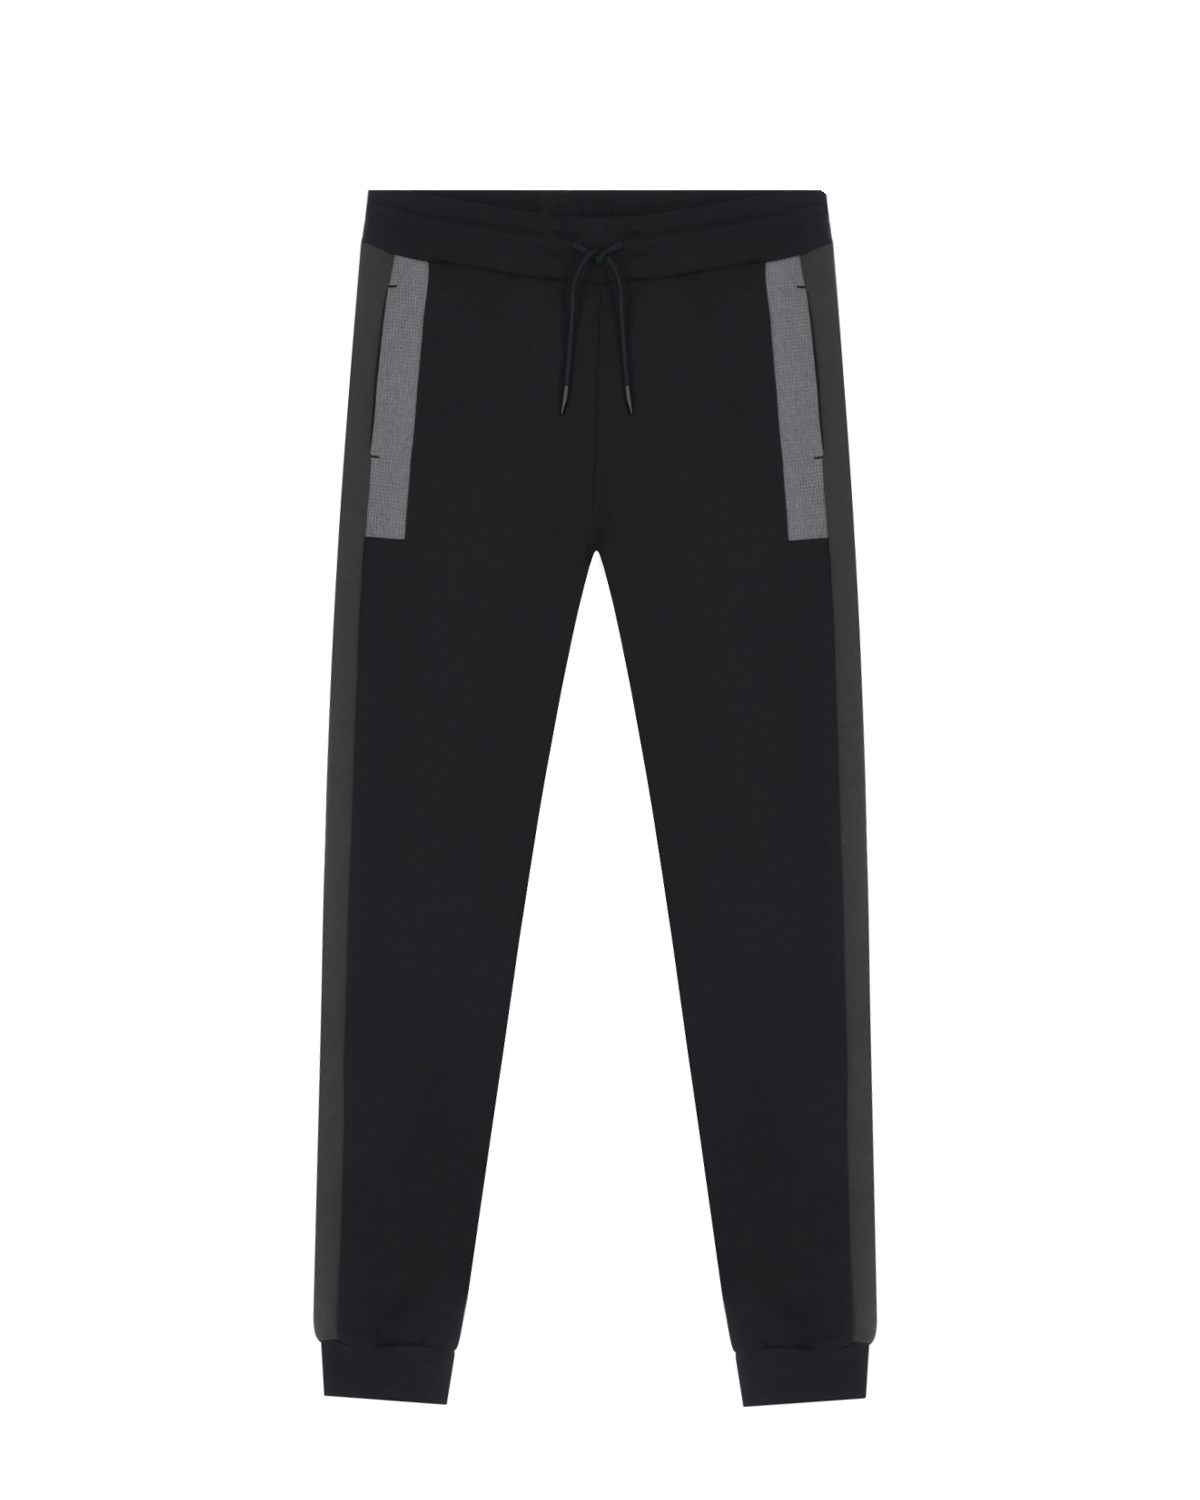 Черные спортивные брюки с лампасами Antony Morato детские, размер 152, цвет черный